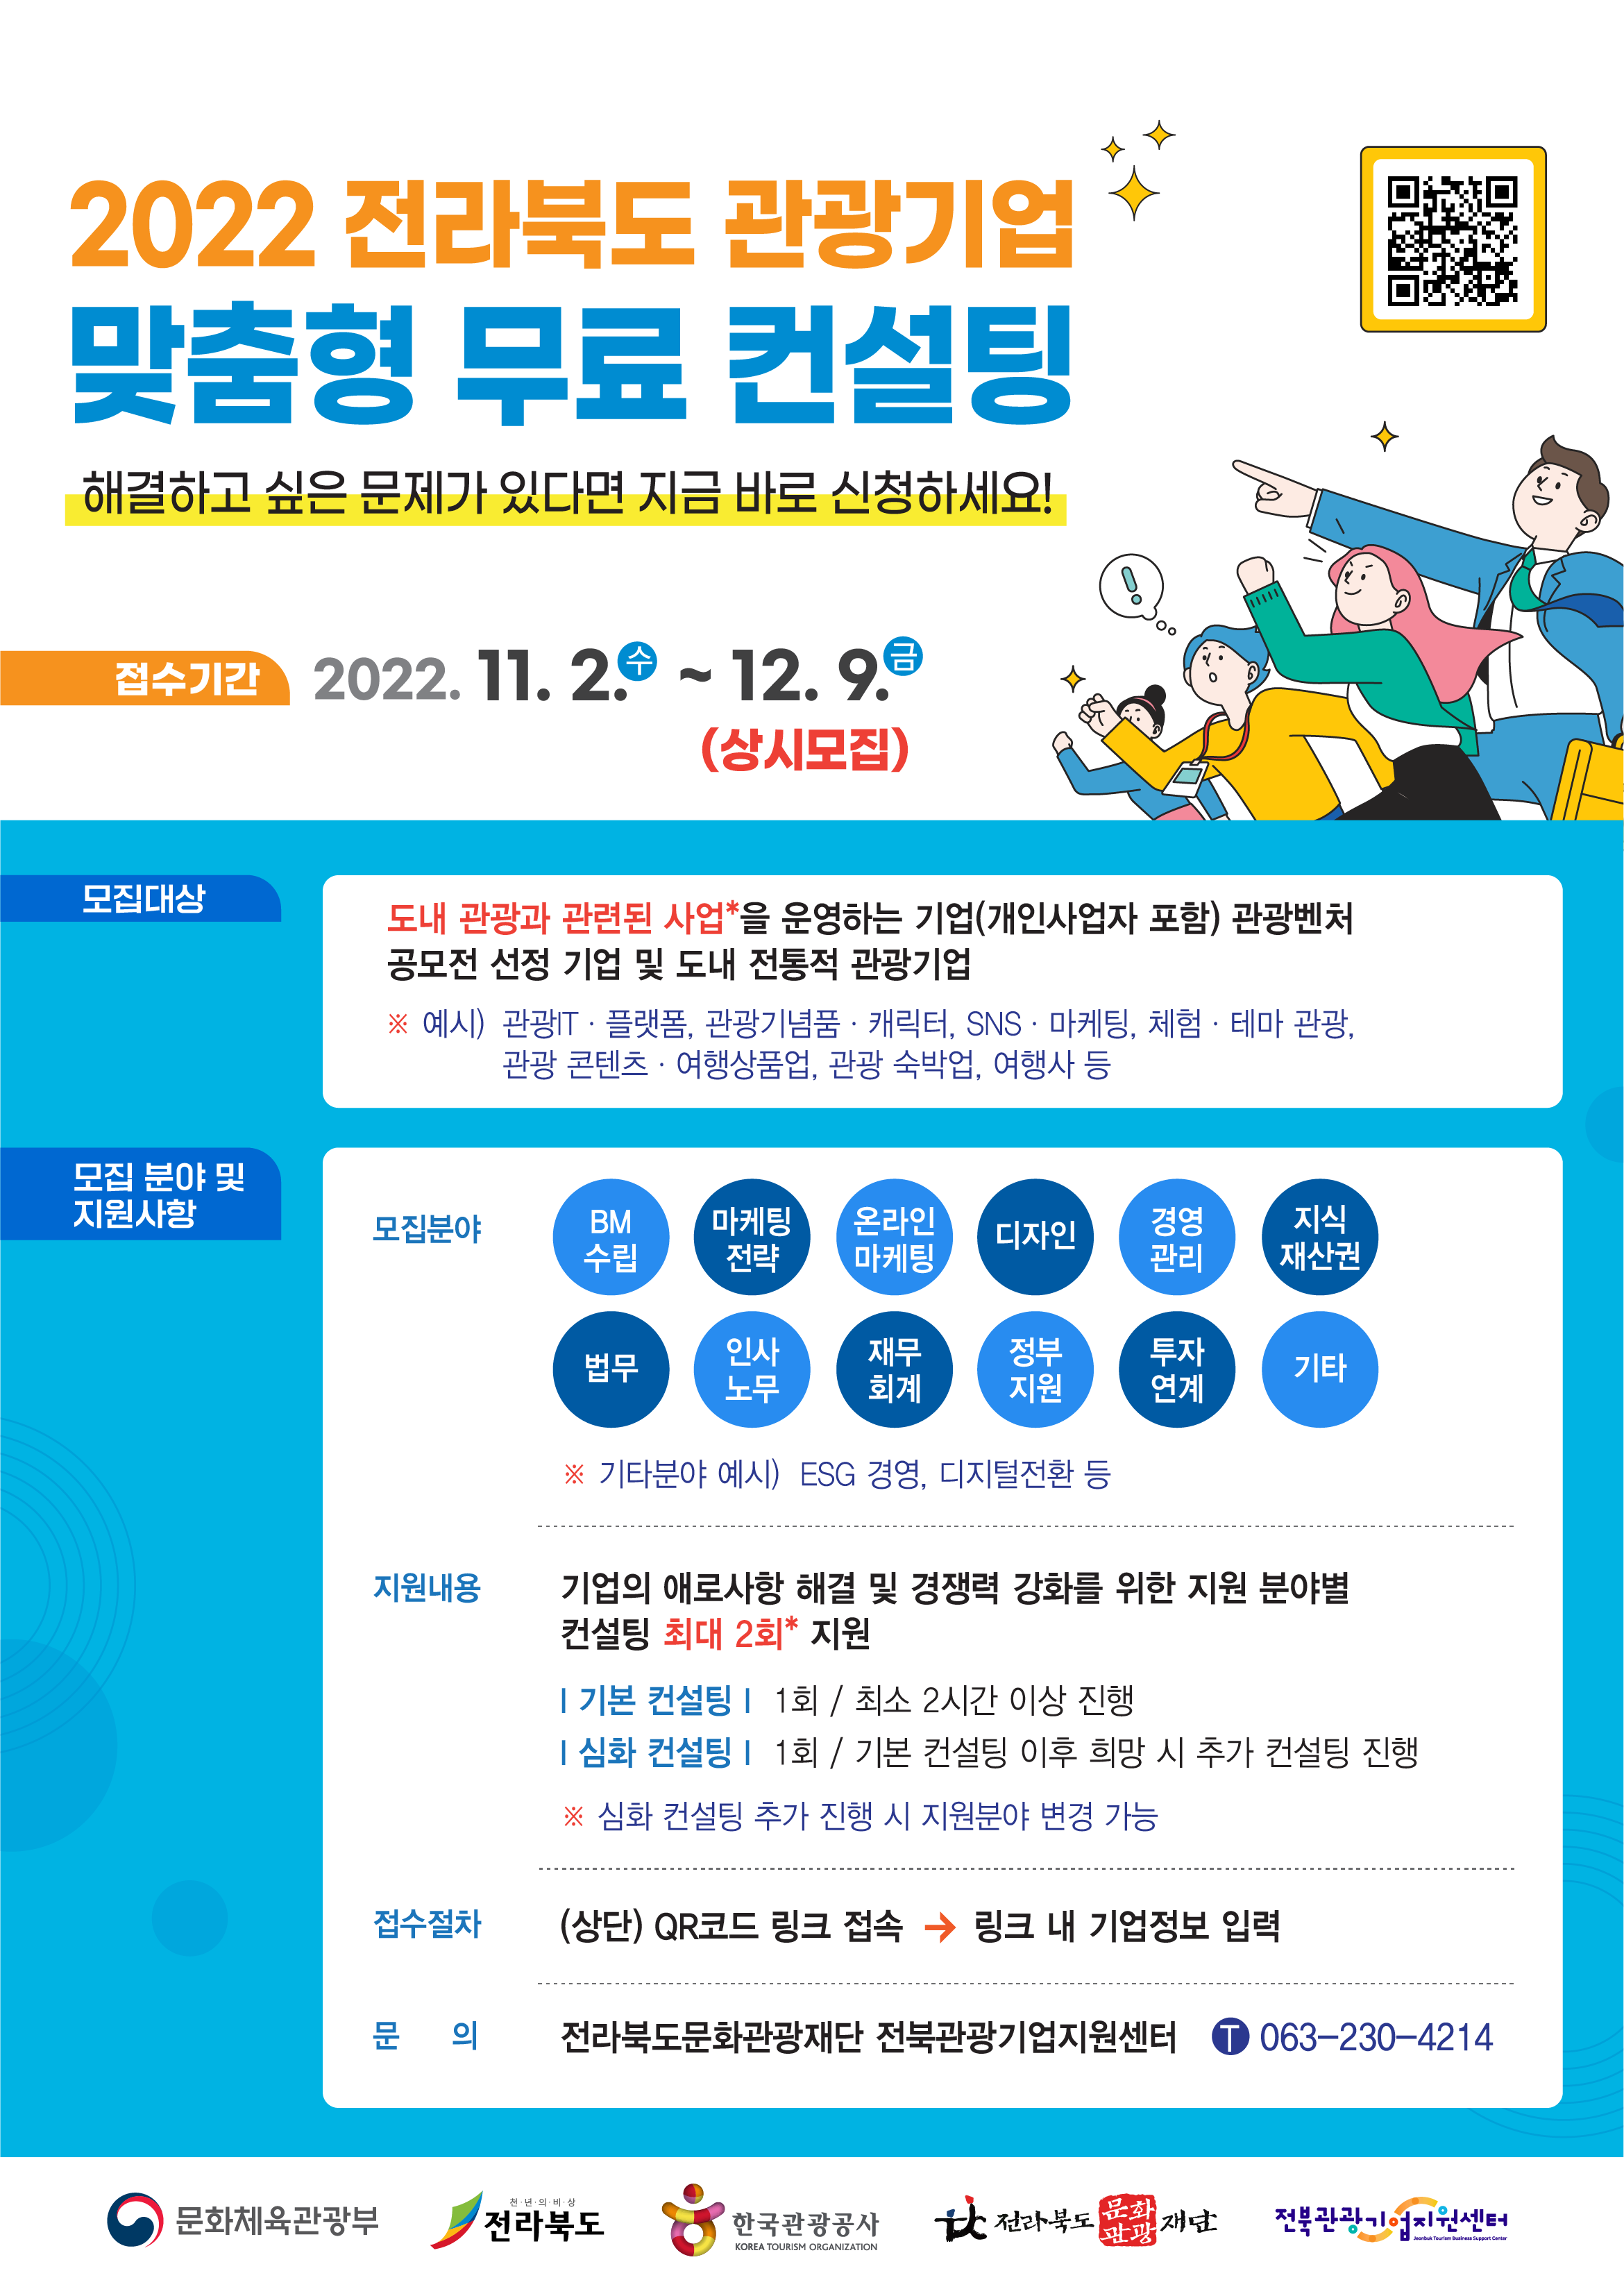 붙임2. 관광기업 컨설팅 포스터(221102)_최종(A3).png